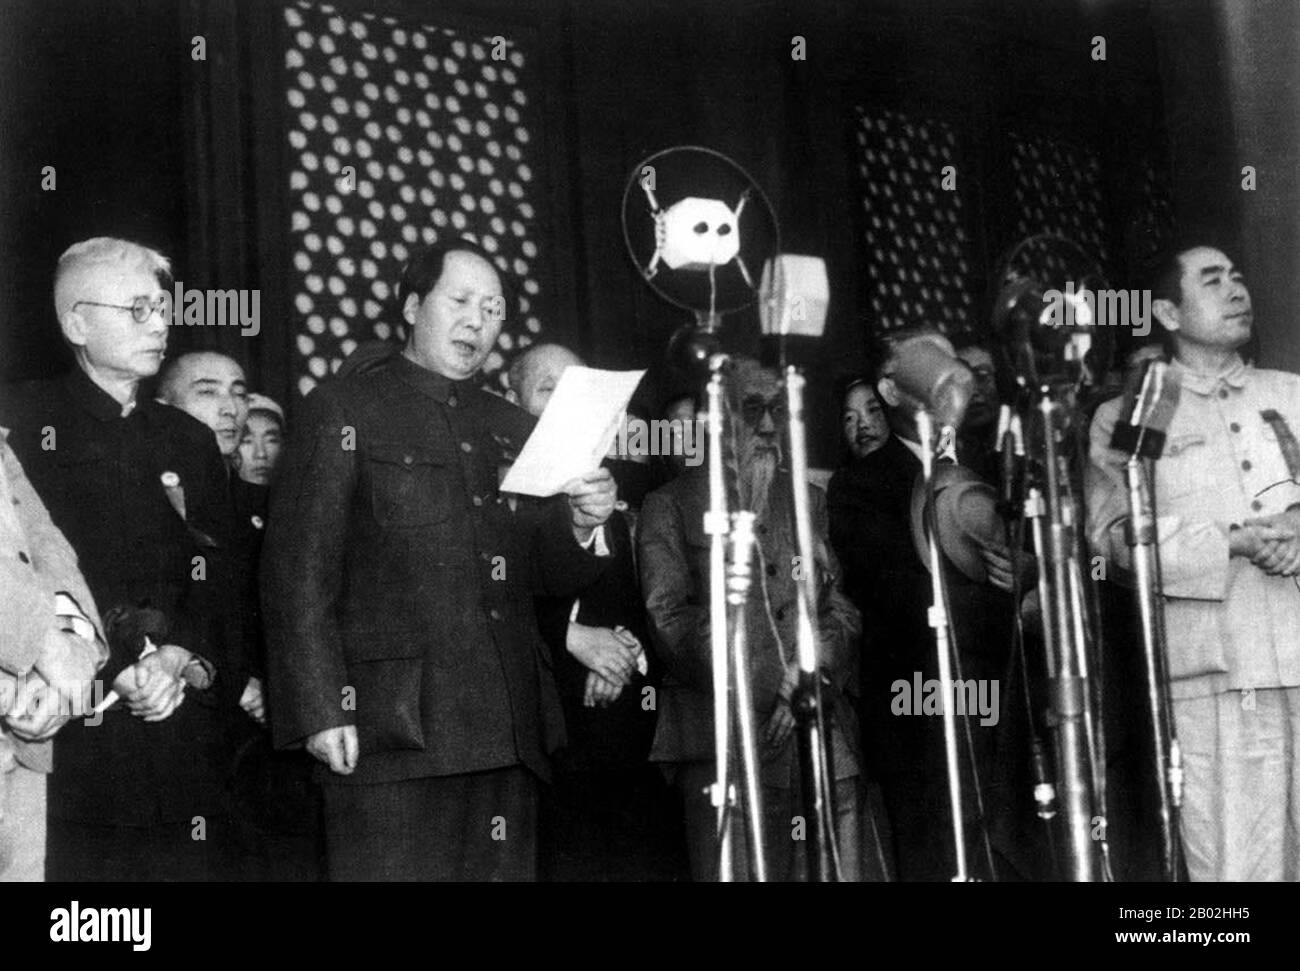 Mao Zedong, auch als Mao Tse-tung (26. Dezember 1893 - 9. September 1976) transliteriert, war ein chinesischer kommunistischer Revolutionär, Guerilla-Kampfstratege, Autor, politischer Theoretiker und Führer der chinesischen Revolution. Er wurde im Allgemeinen als Chairman Mao bezeichnet und war der Architekt der Volksrepublik China (PRC) von ihrer Gründung im Jahr 1949 an und hatte bis zu seinem Tod im Jahr 1976 die autoritäre Kontrolle über die Nation inne. Maos theoretischer Beitrag zum Marxismus-Leninismus, zusammen mit seinen militärischen Strategien und der Marke der politischen Politik, werden heute gemeinsam als Maoismus bezeichnet. Stockfoto